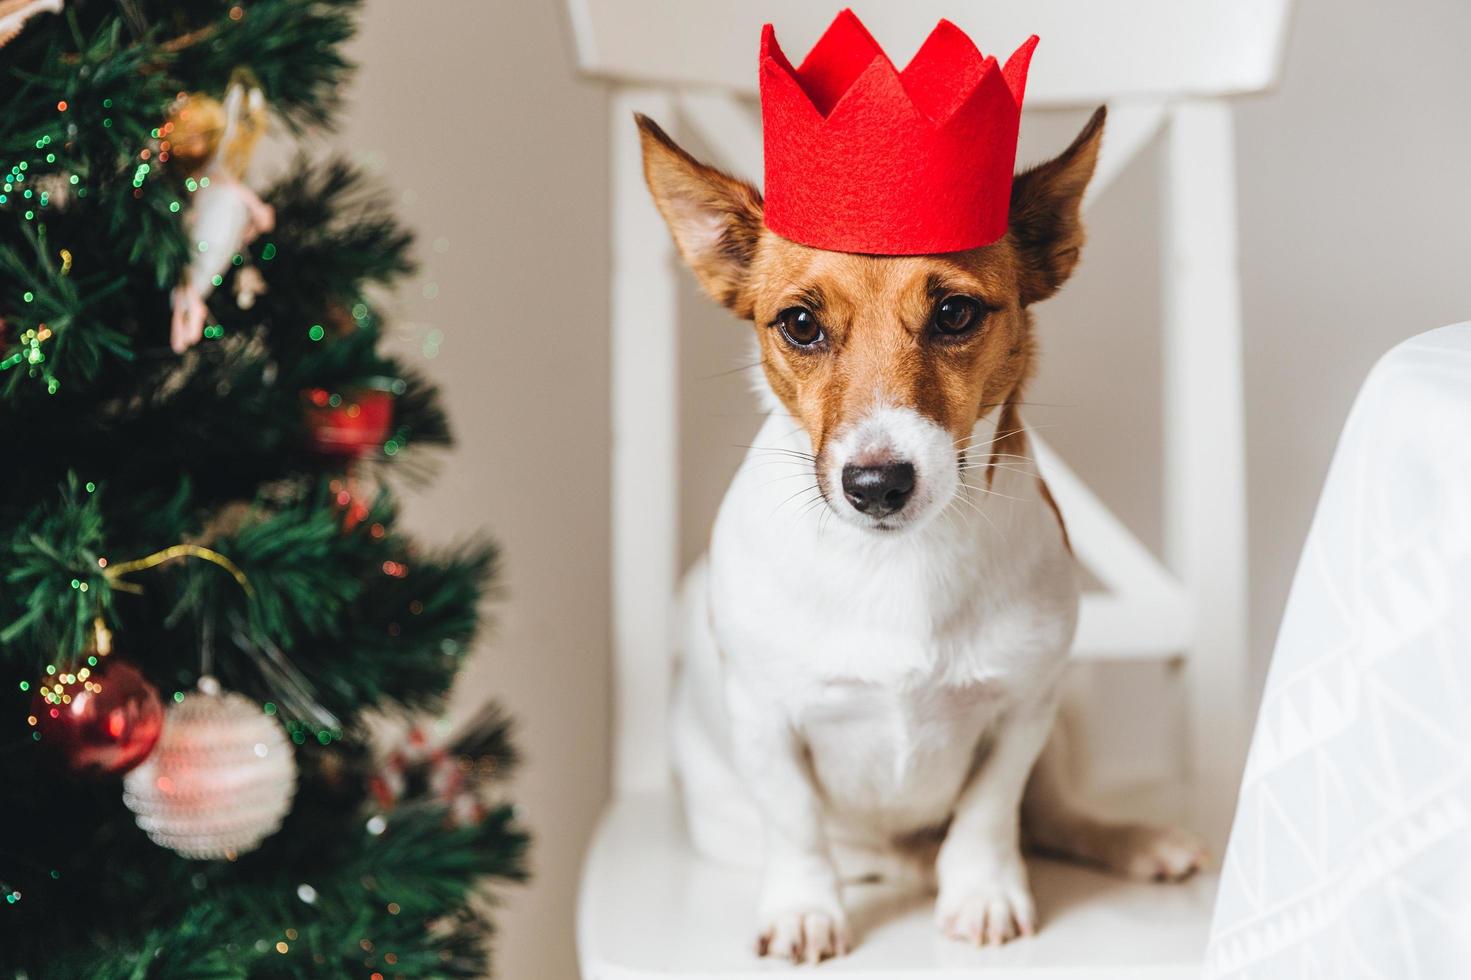 foto de jack russell, un perro pequeño con una corona de papel rojo, se sienta cerca de un árbol de navidad decorado, levanta las orejas, espera algo delicioso o sabroso de la gente. mascota divertida siendo símbolo de año nuevo.